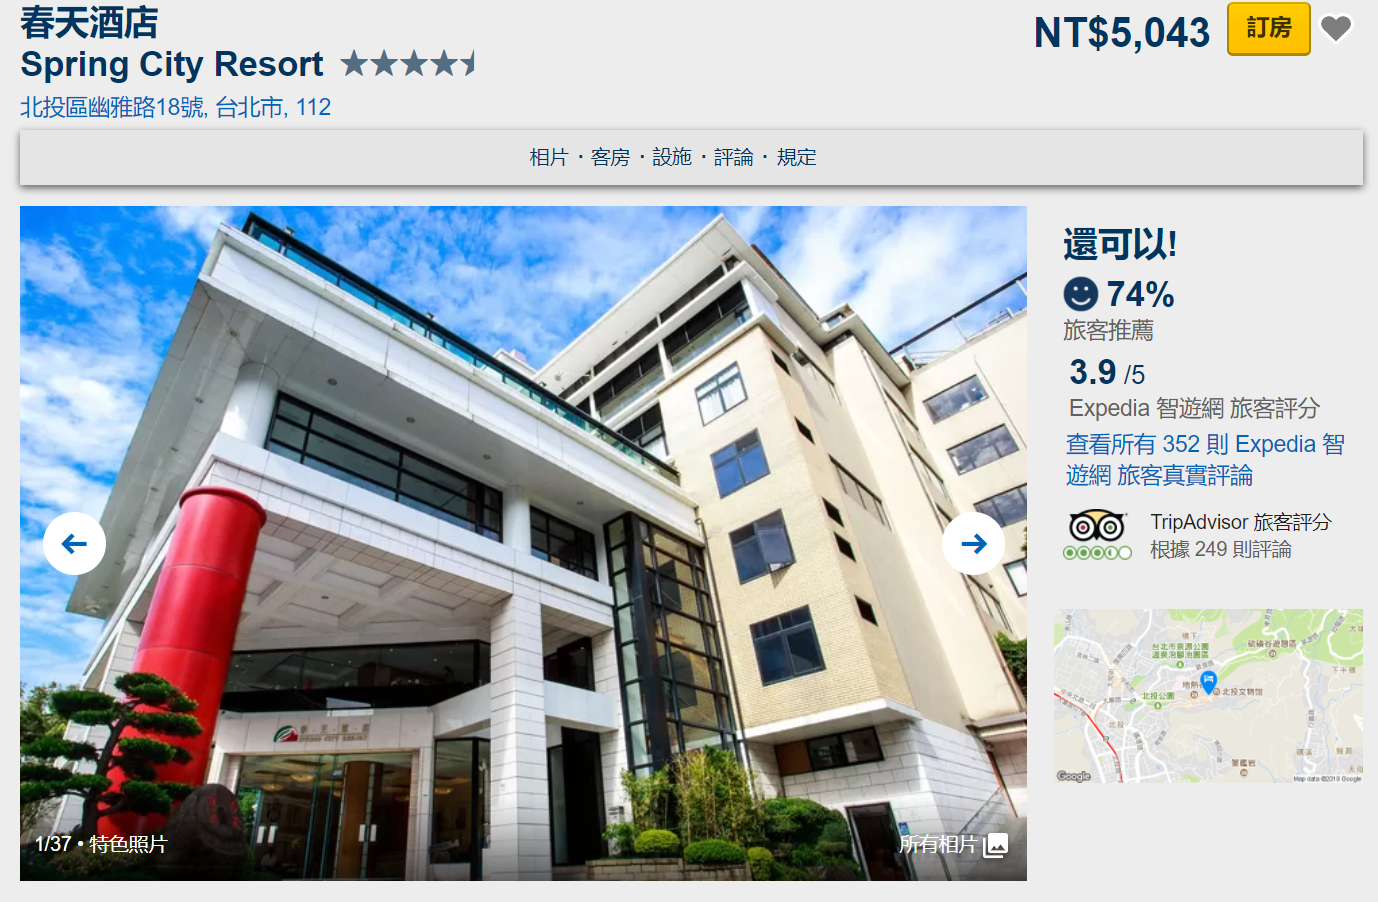 台北、新北溫泉飯店。許願名單與網路評價｜Expedia全台溫泉飯店促銷8折起